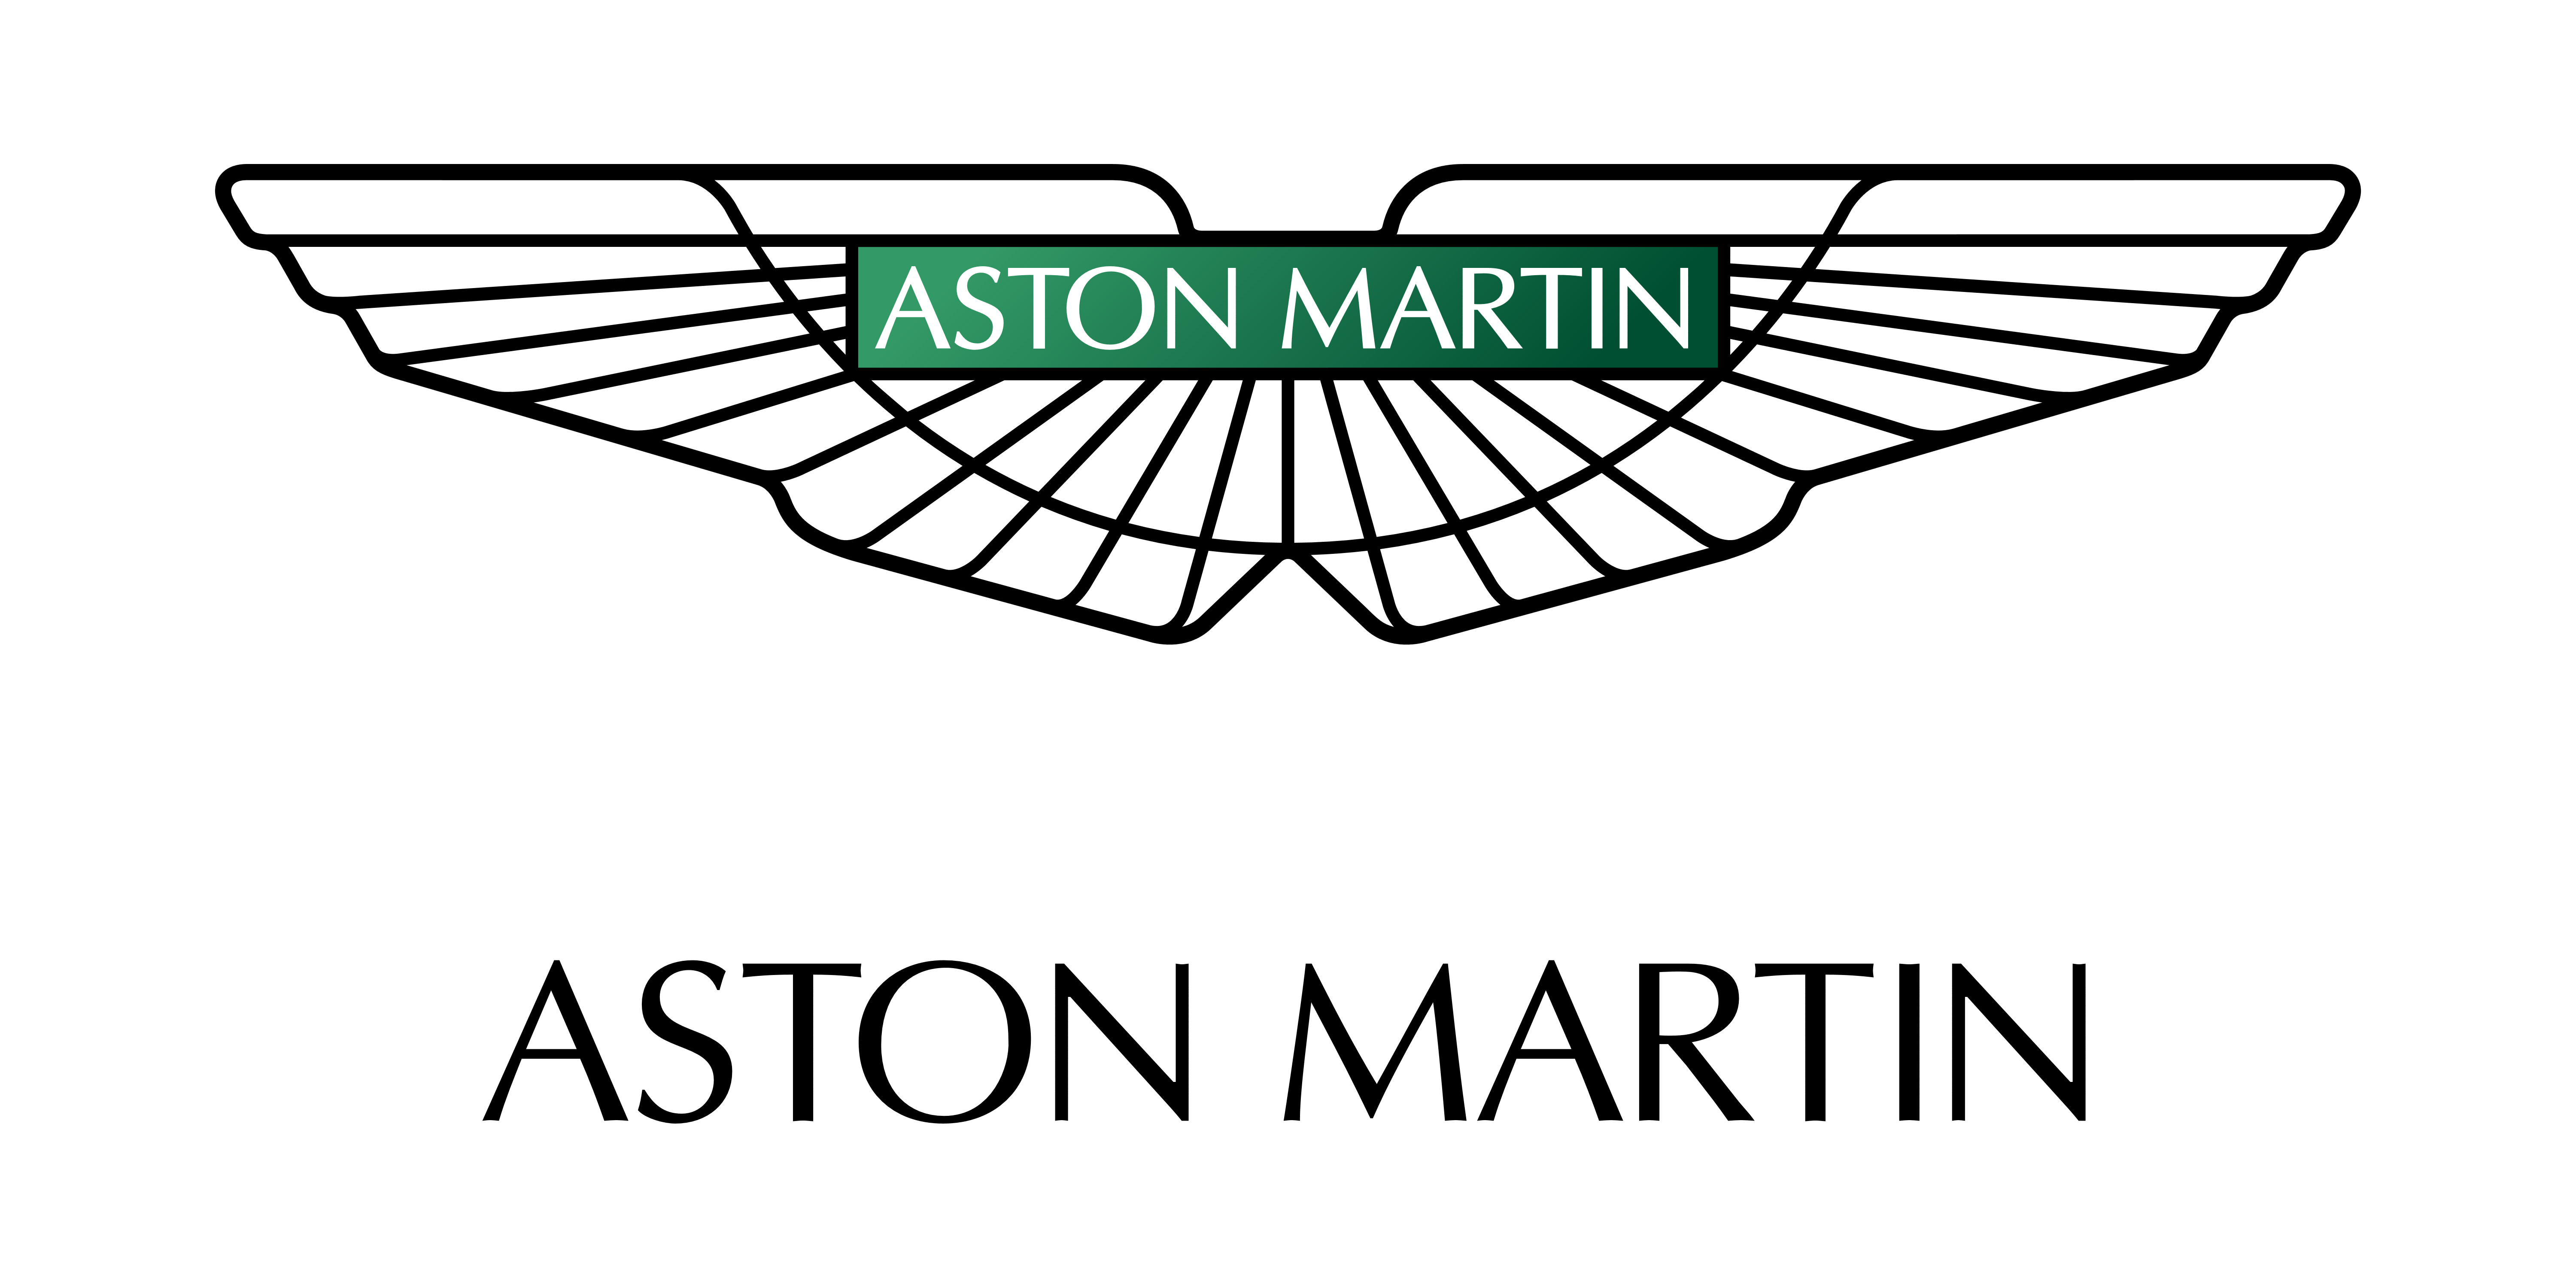 Questa estate Aston Martin presenterà la sua prima auto elettrica